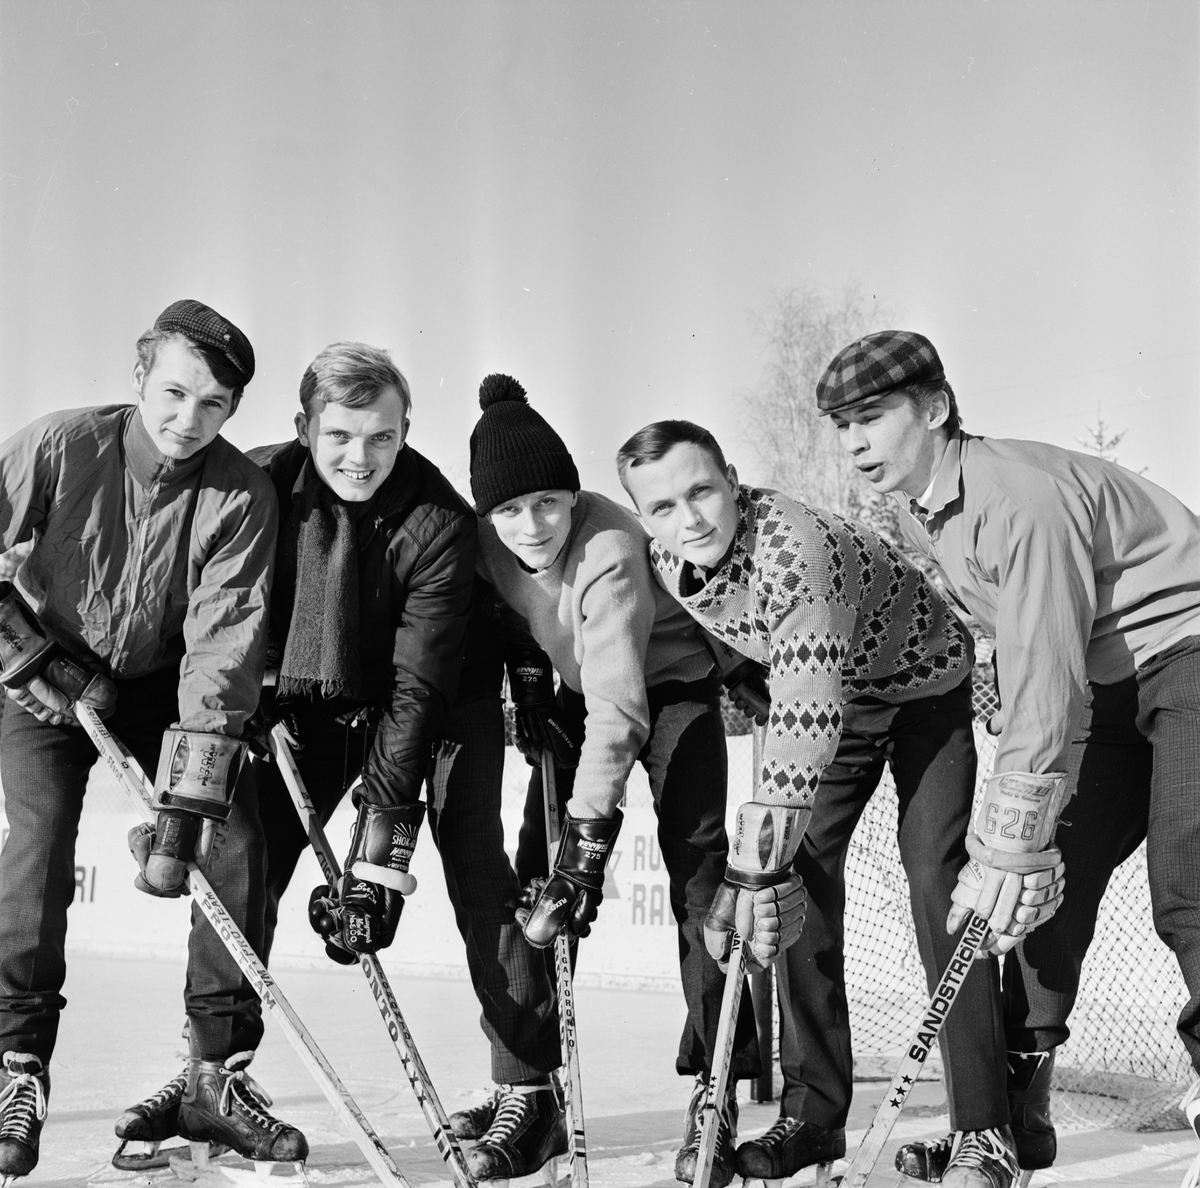 Ishockeyträning på Vegavallen i Tierp, Uppland april 1969